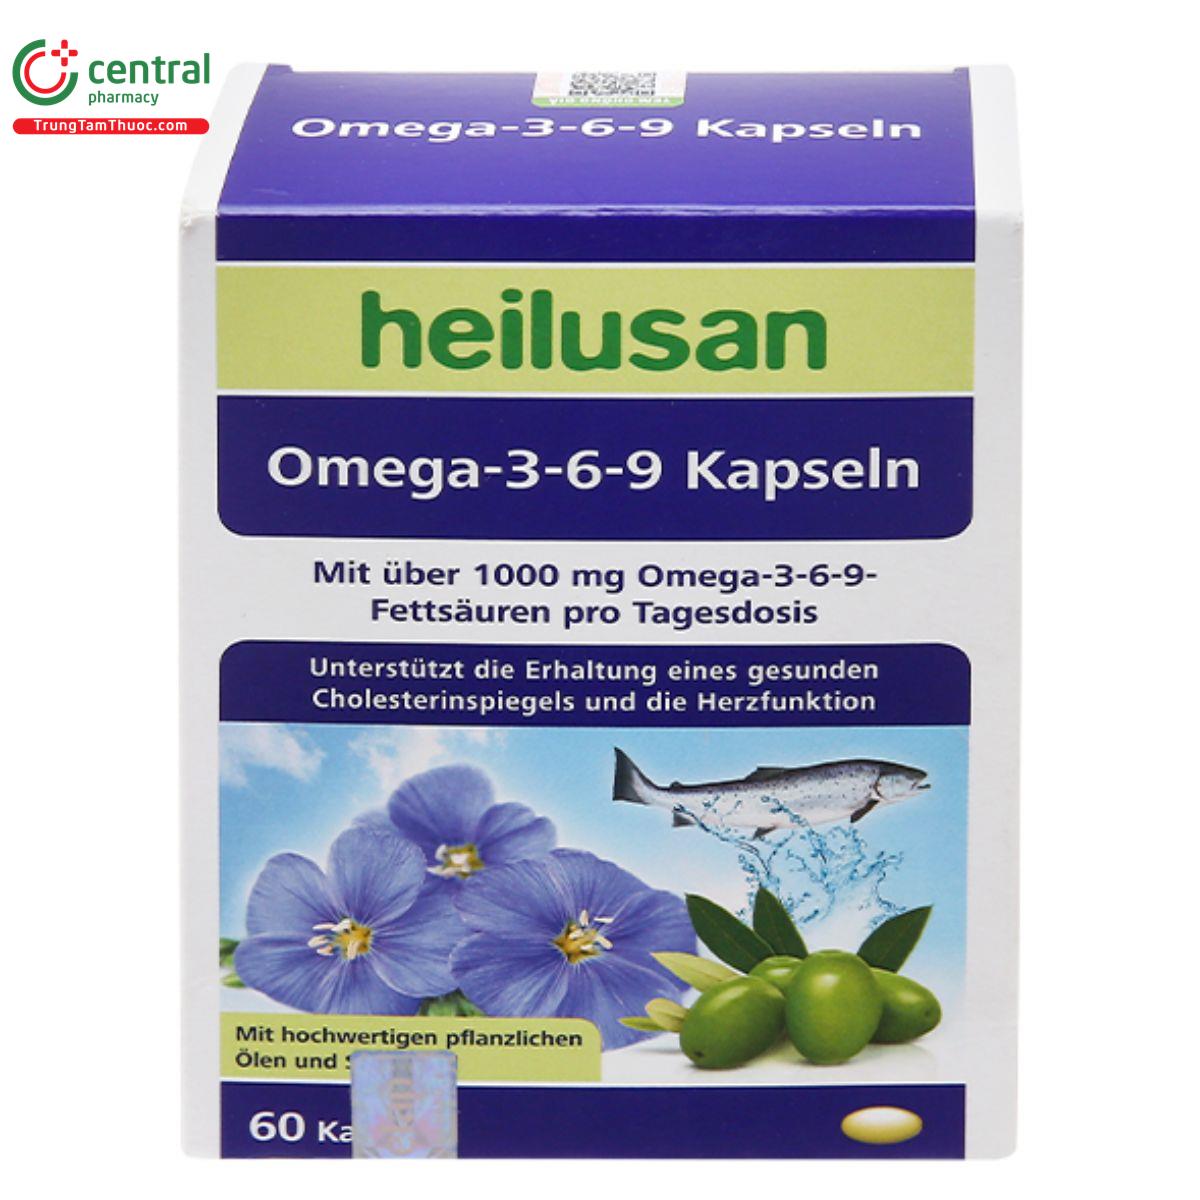 heilusan omega 3 6 9 kapseln 4 C1036